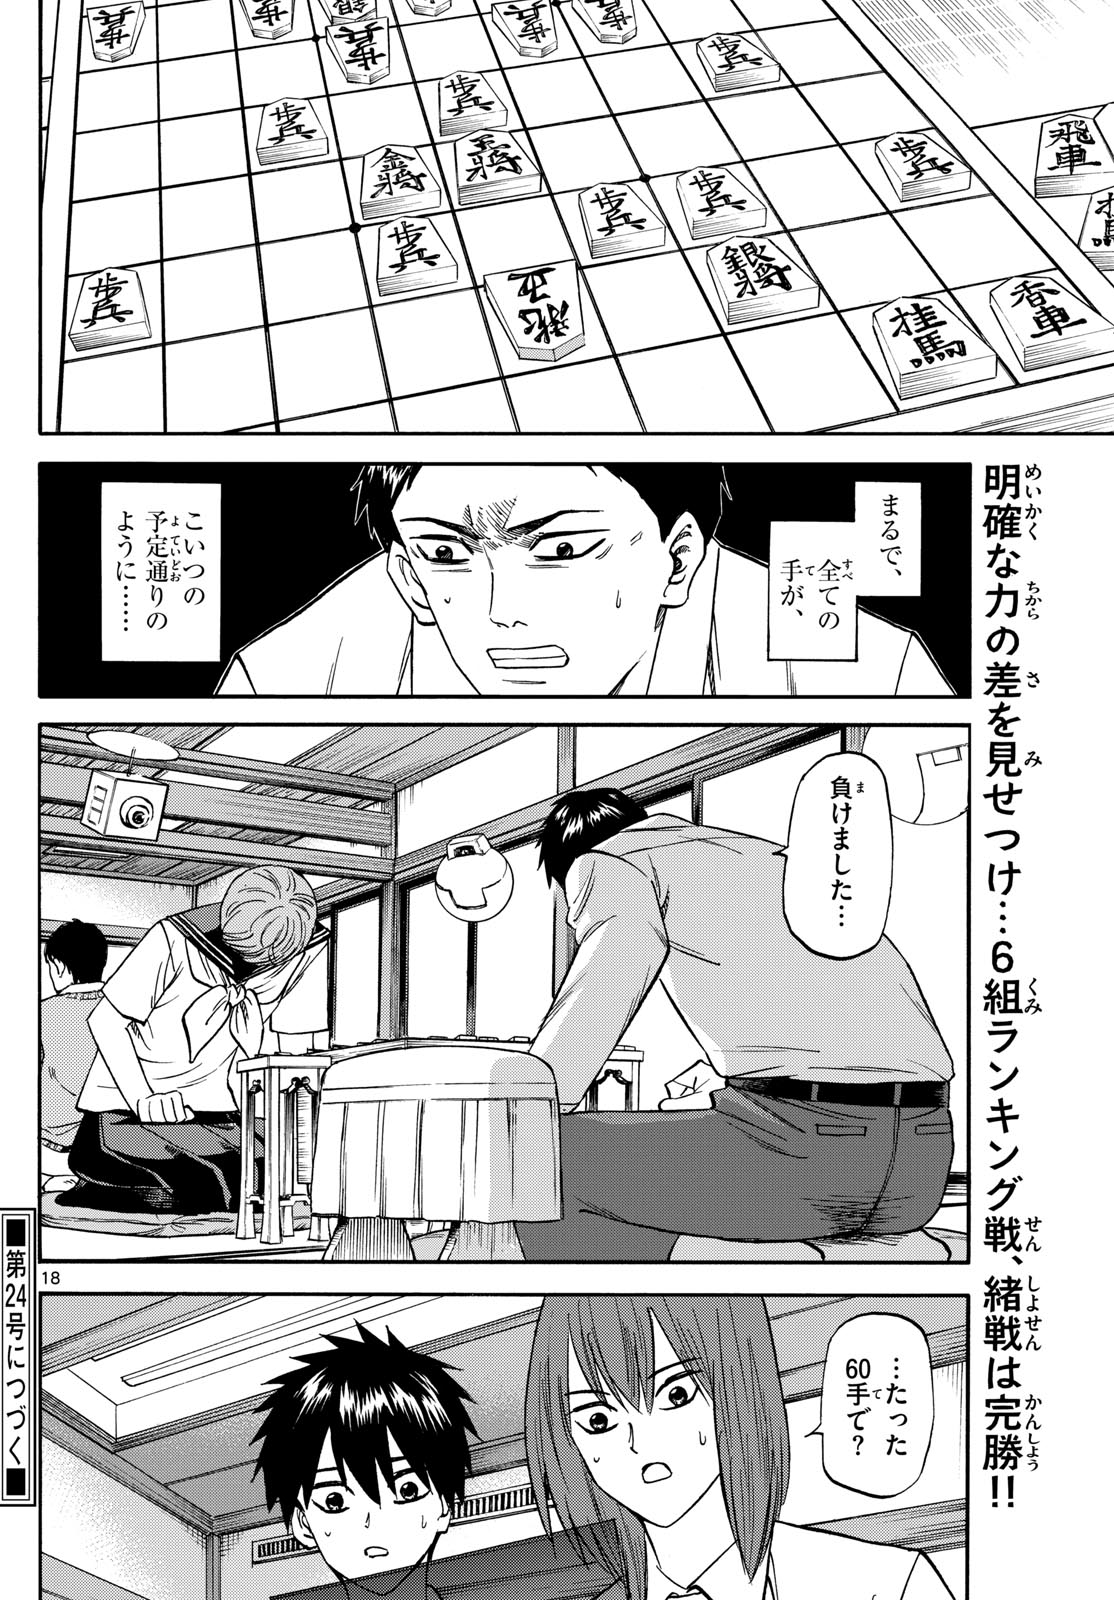 Tatsu to Ichigo - Chapter 189 - Page 18